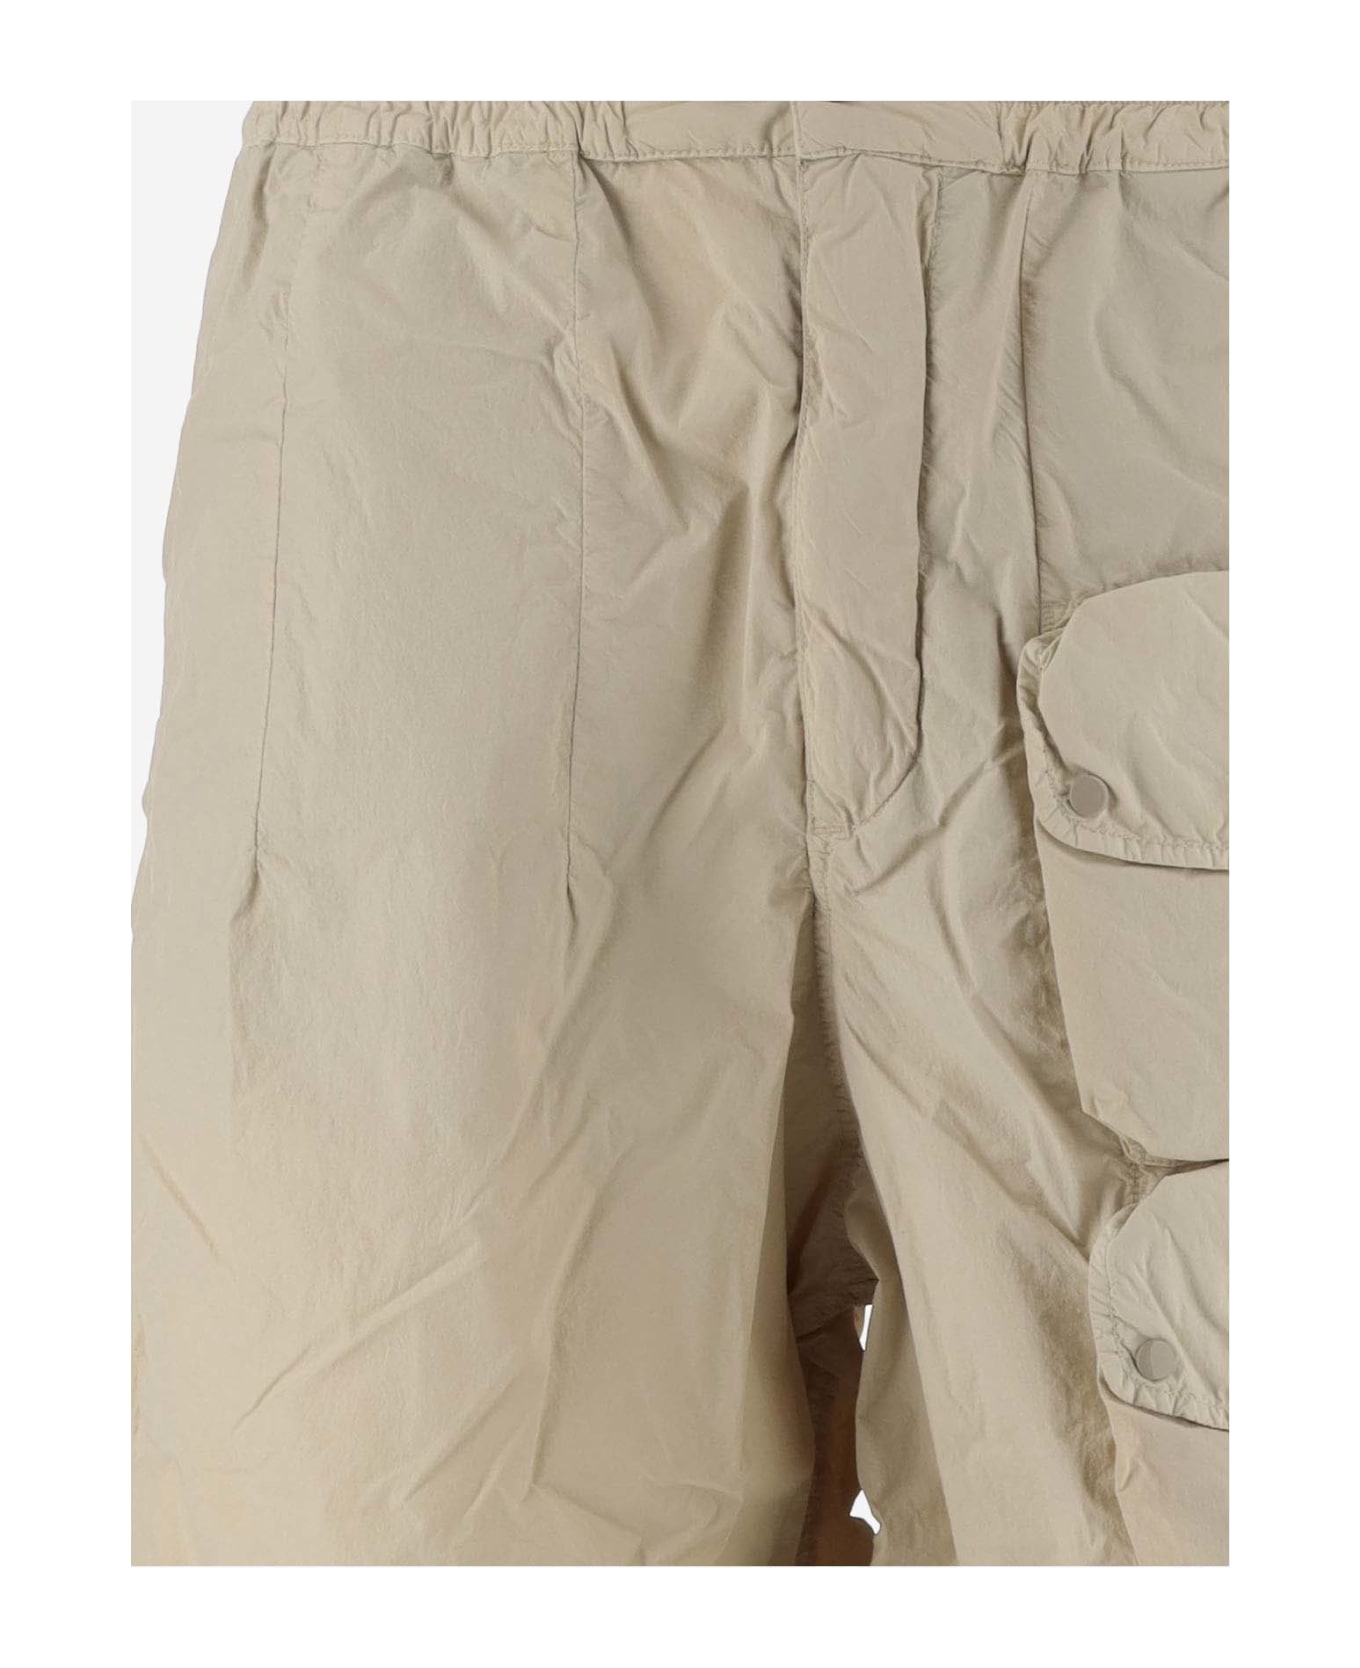 Ten C Nylon Cargo Shorts - Beige